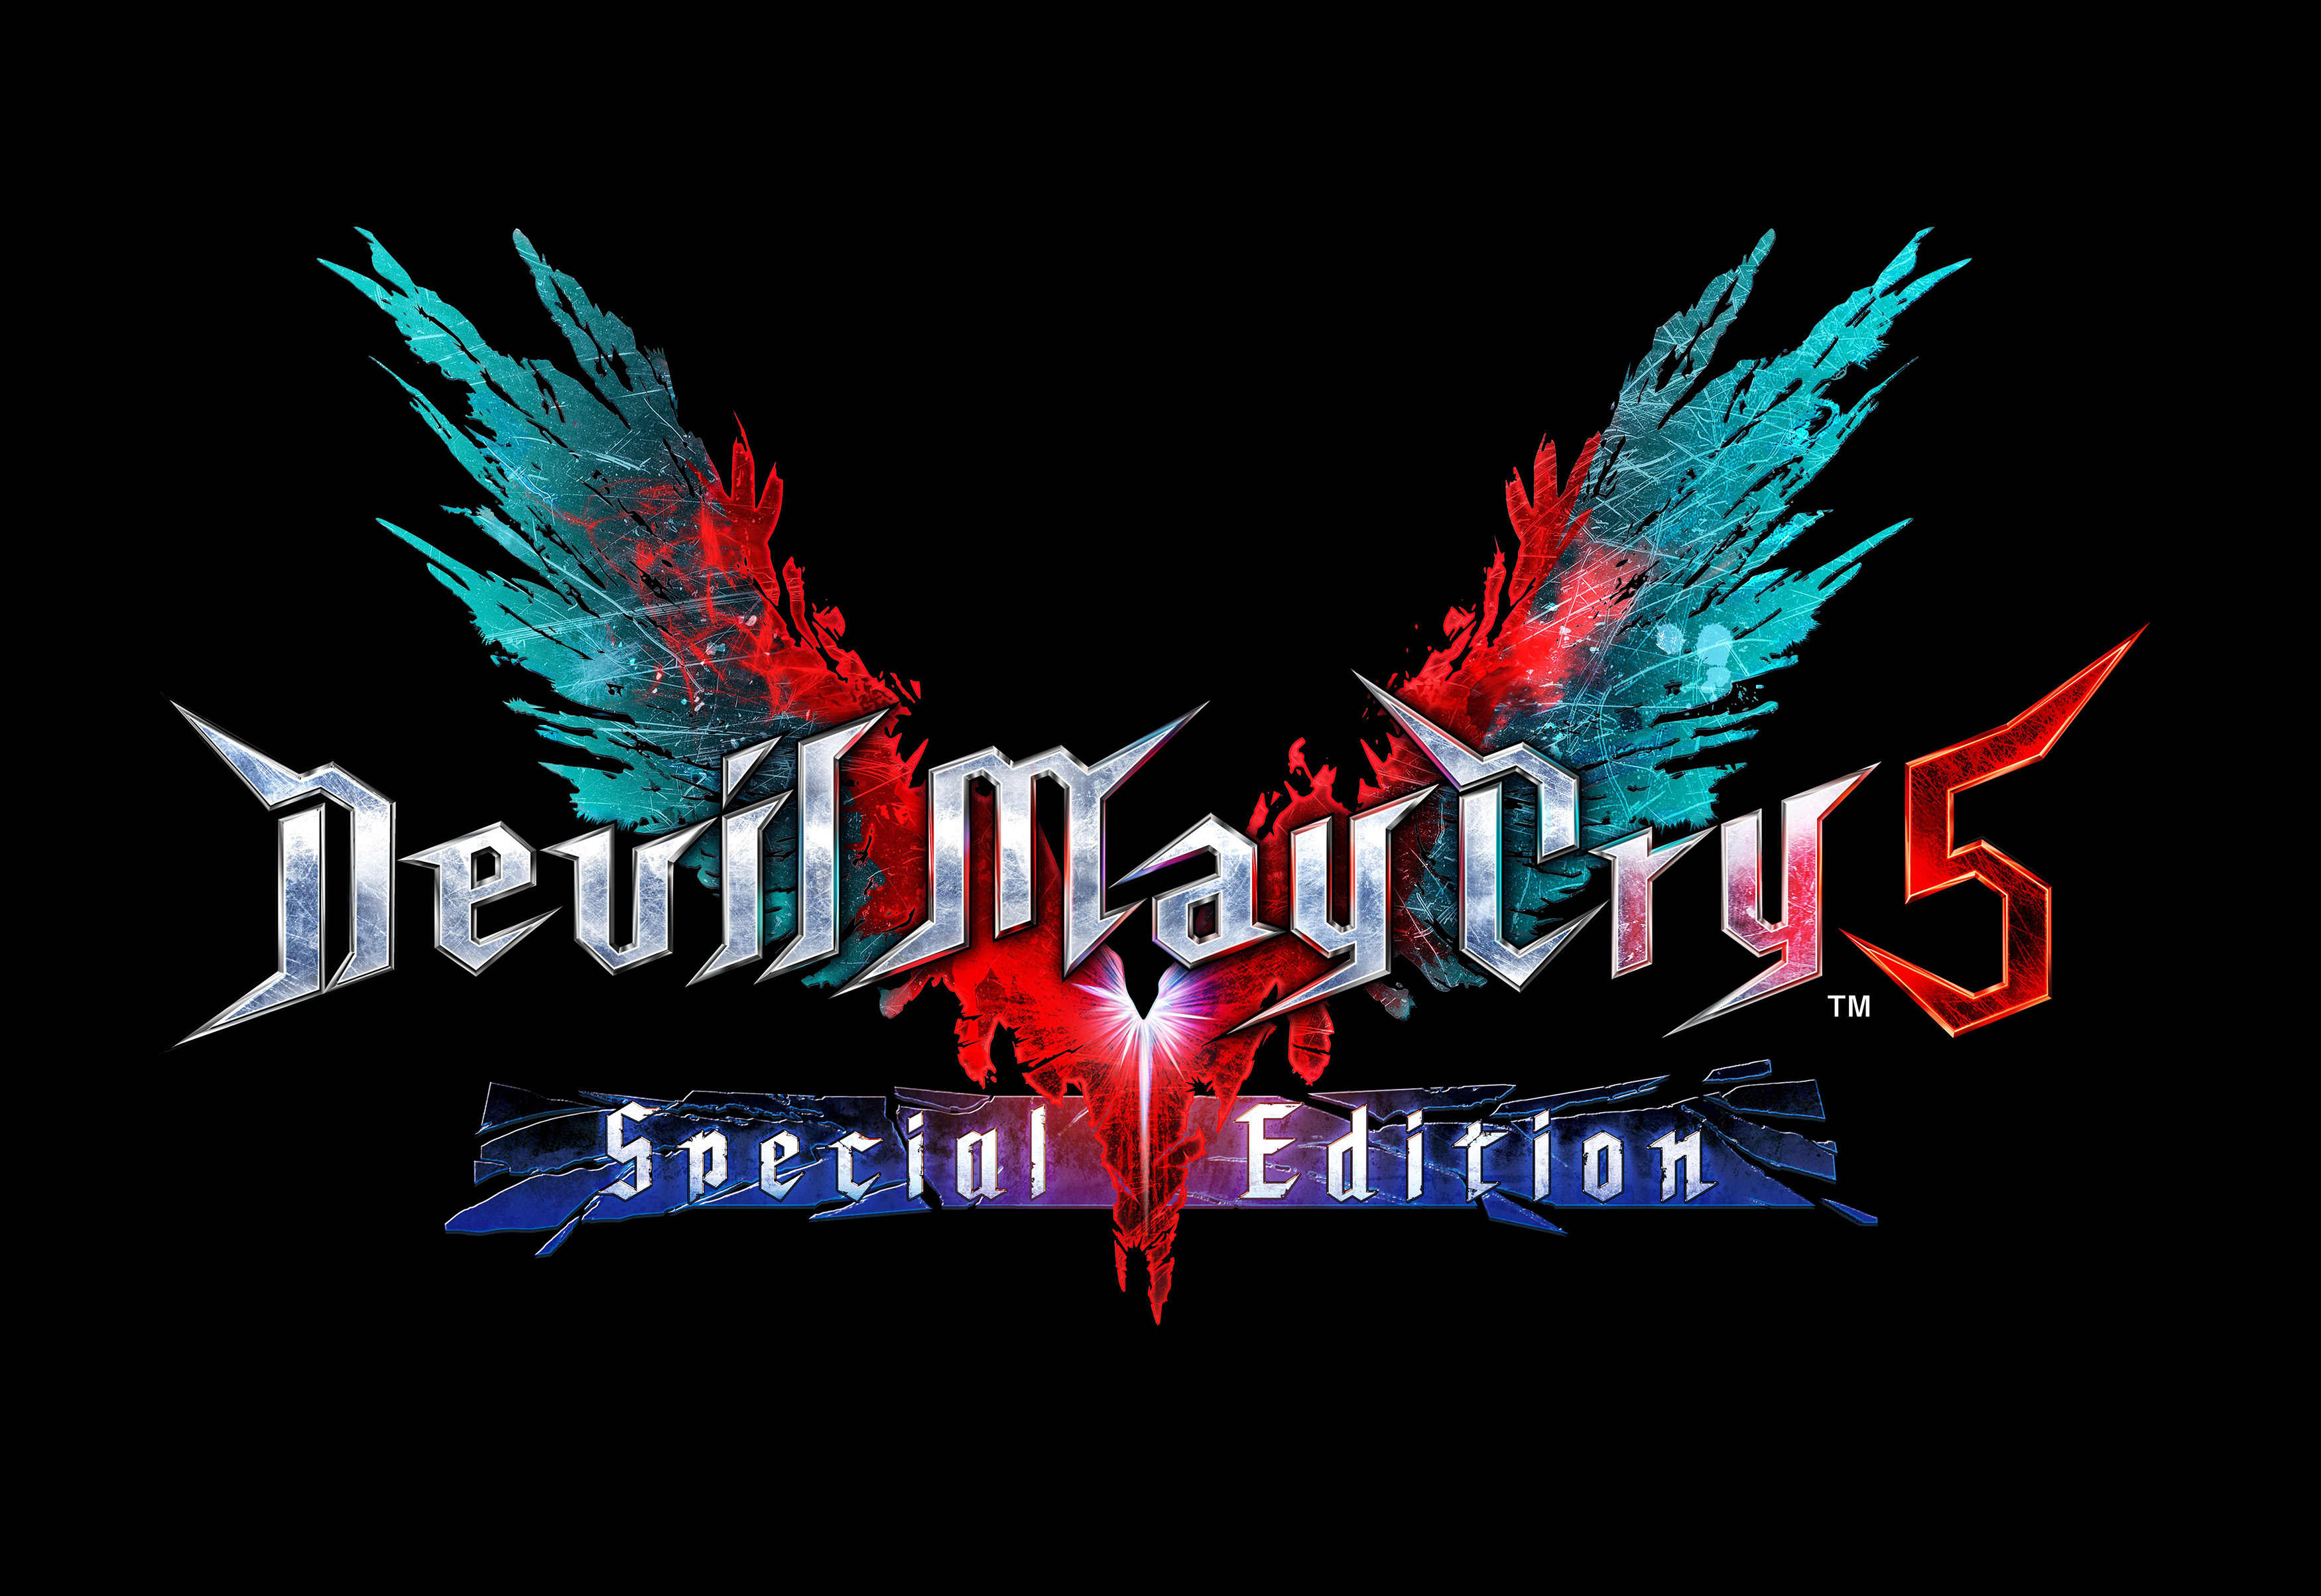 Demon's Souls PS5 on X: Pre-Order Bonus: The Reaper Scythe